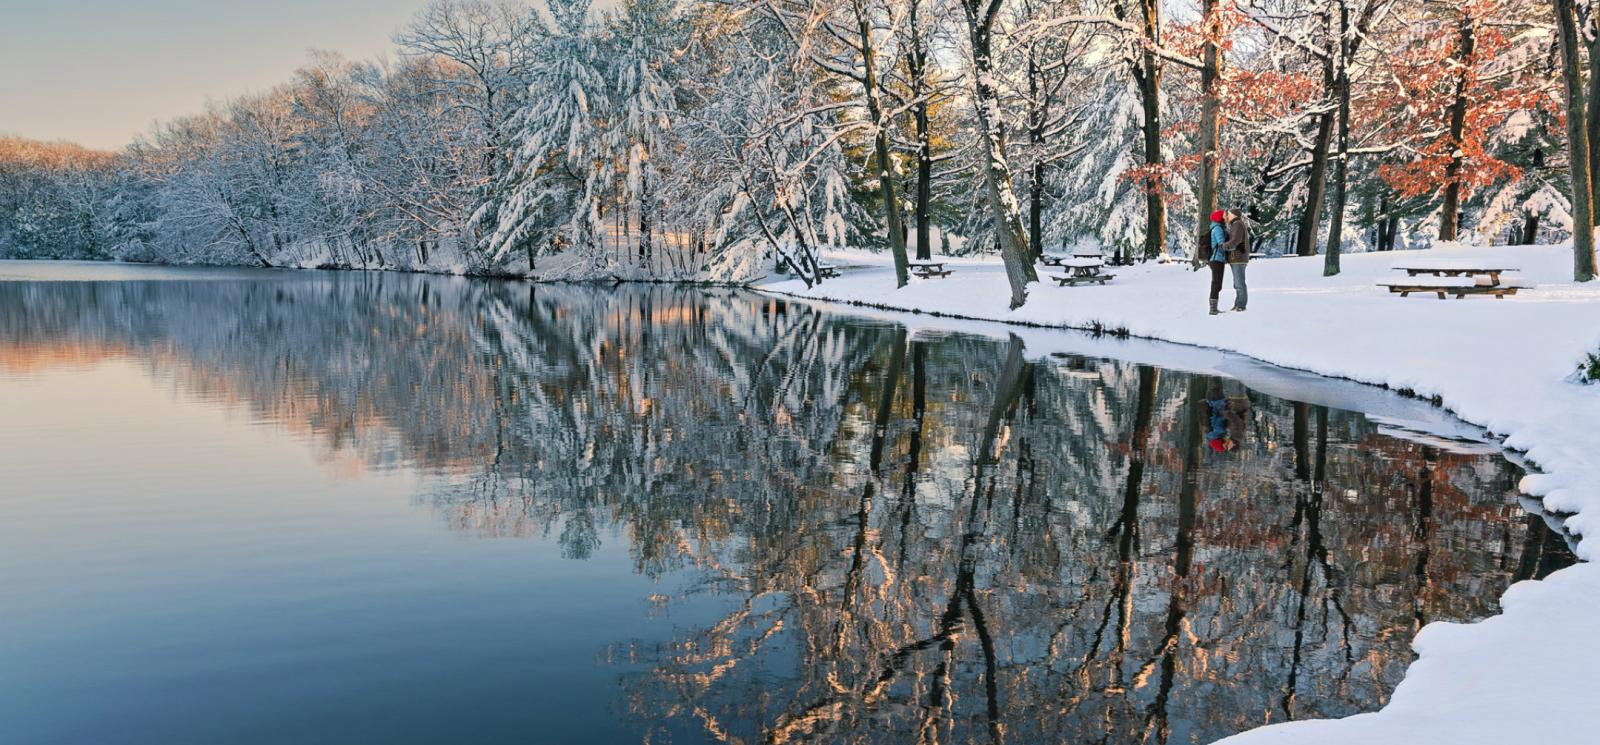 Pareja junto a Wharton Brook en invierno (Flickr@RomyLee)